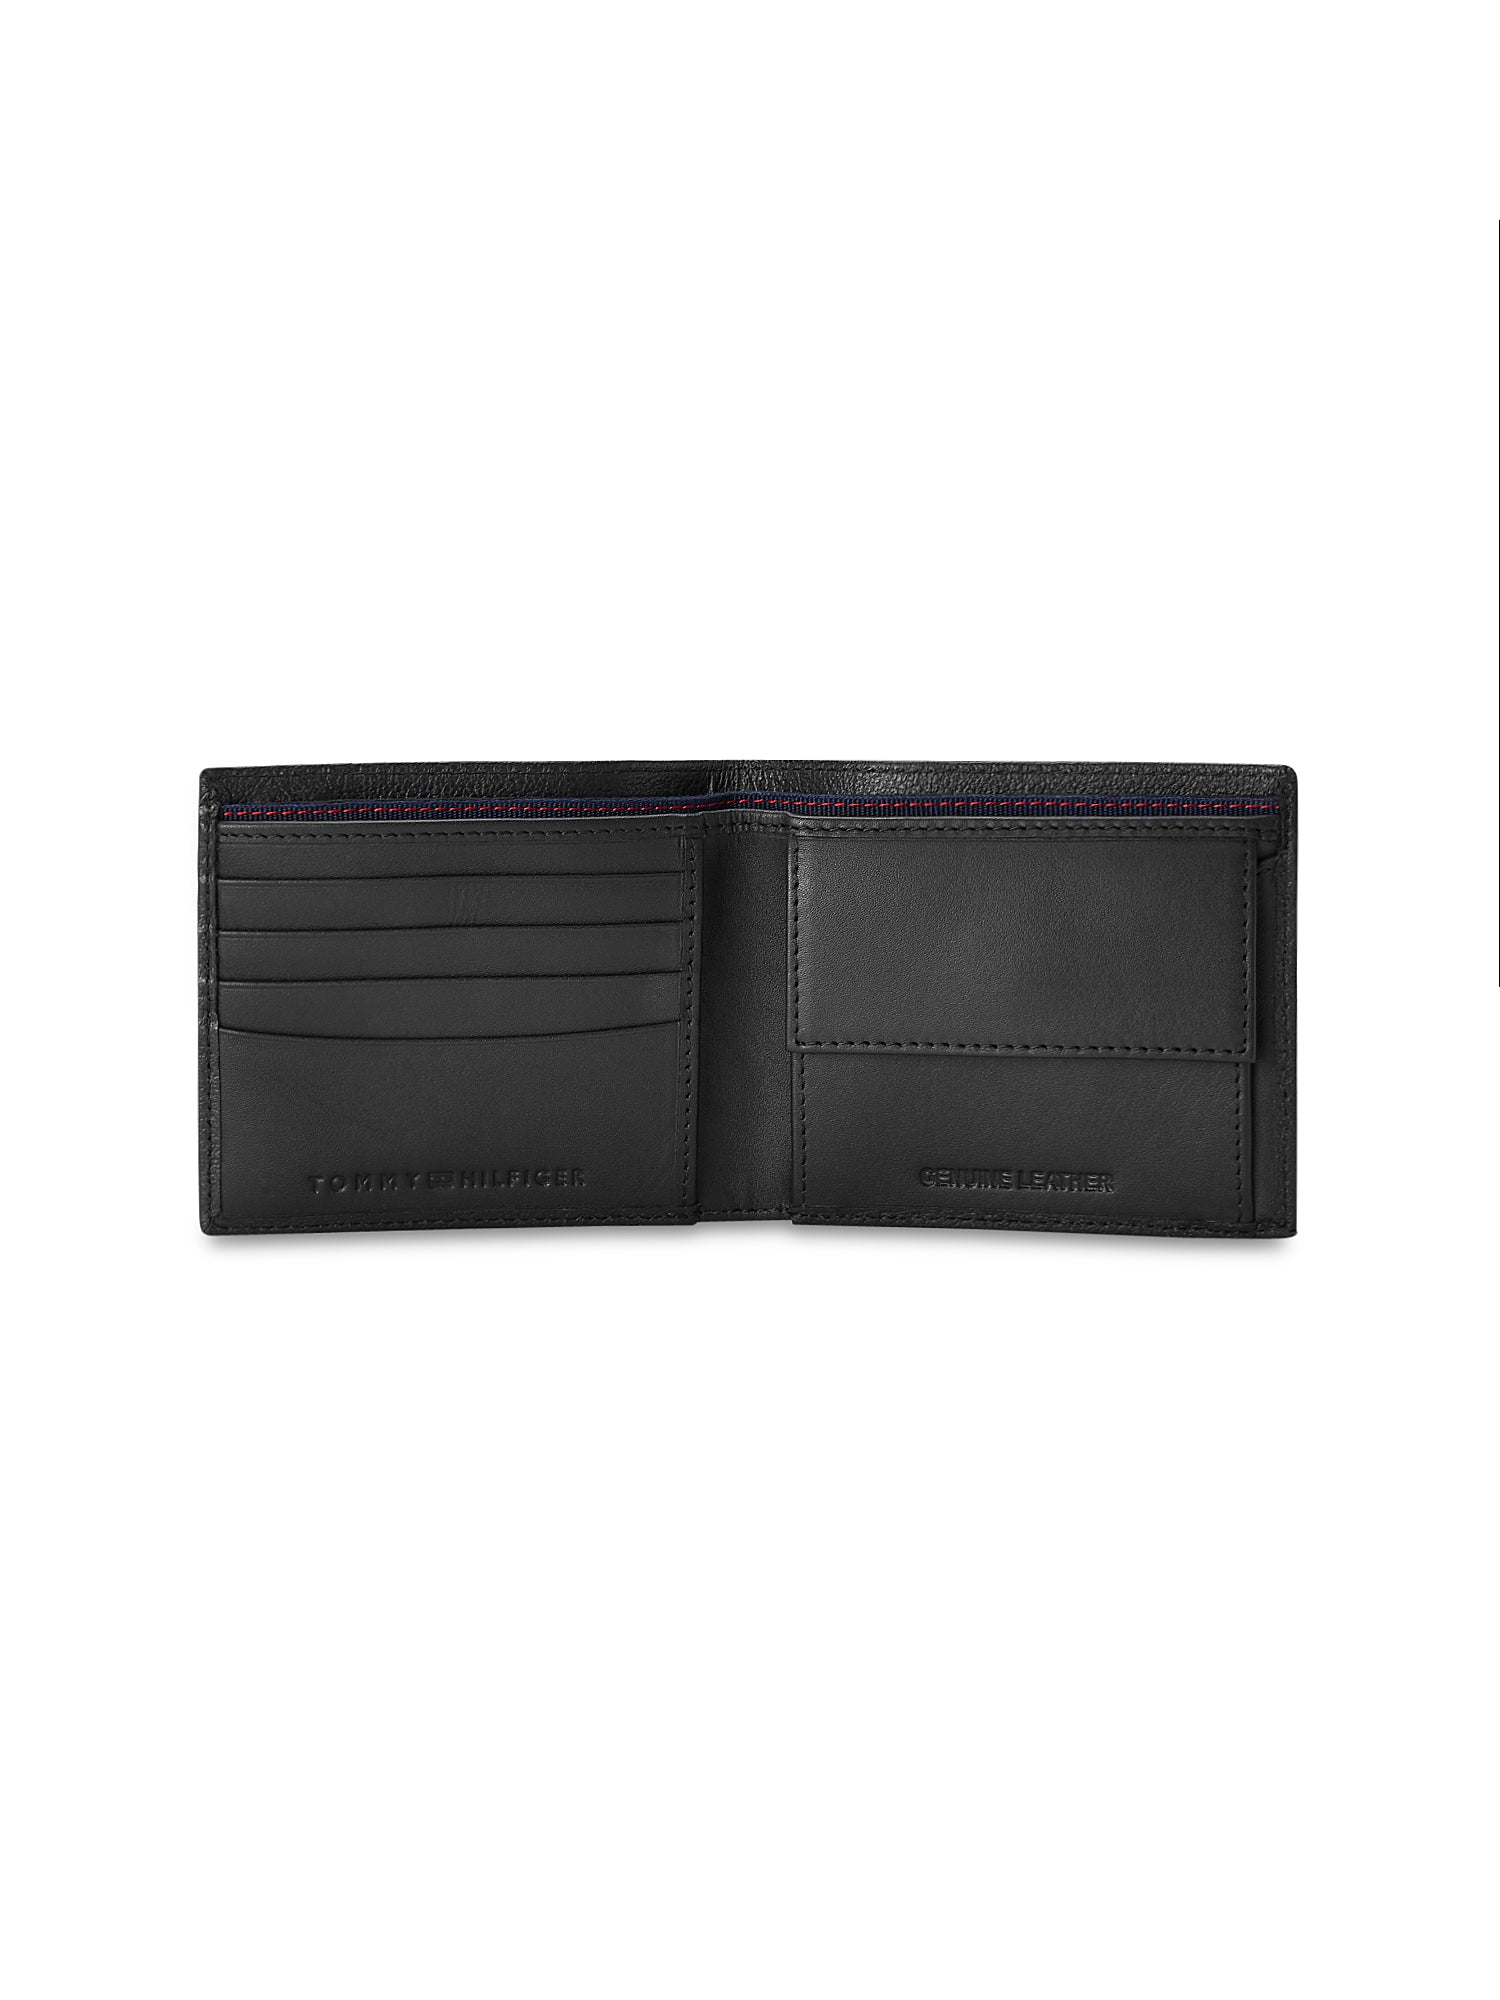 Tommy Hilfiger Arendal Mens Leather Global Coin Wallet-Black